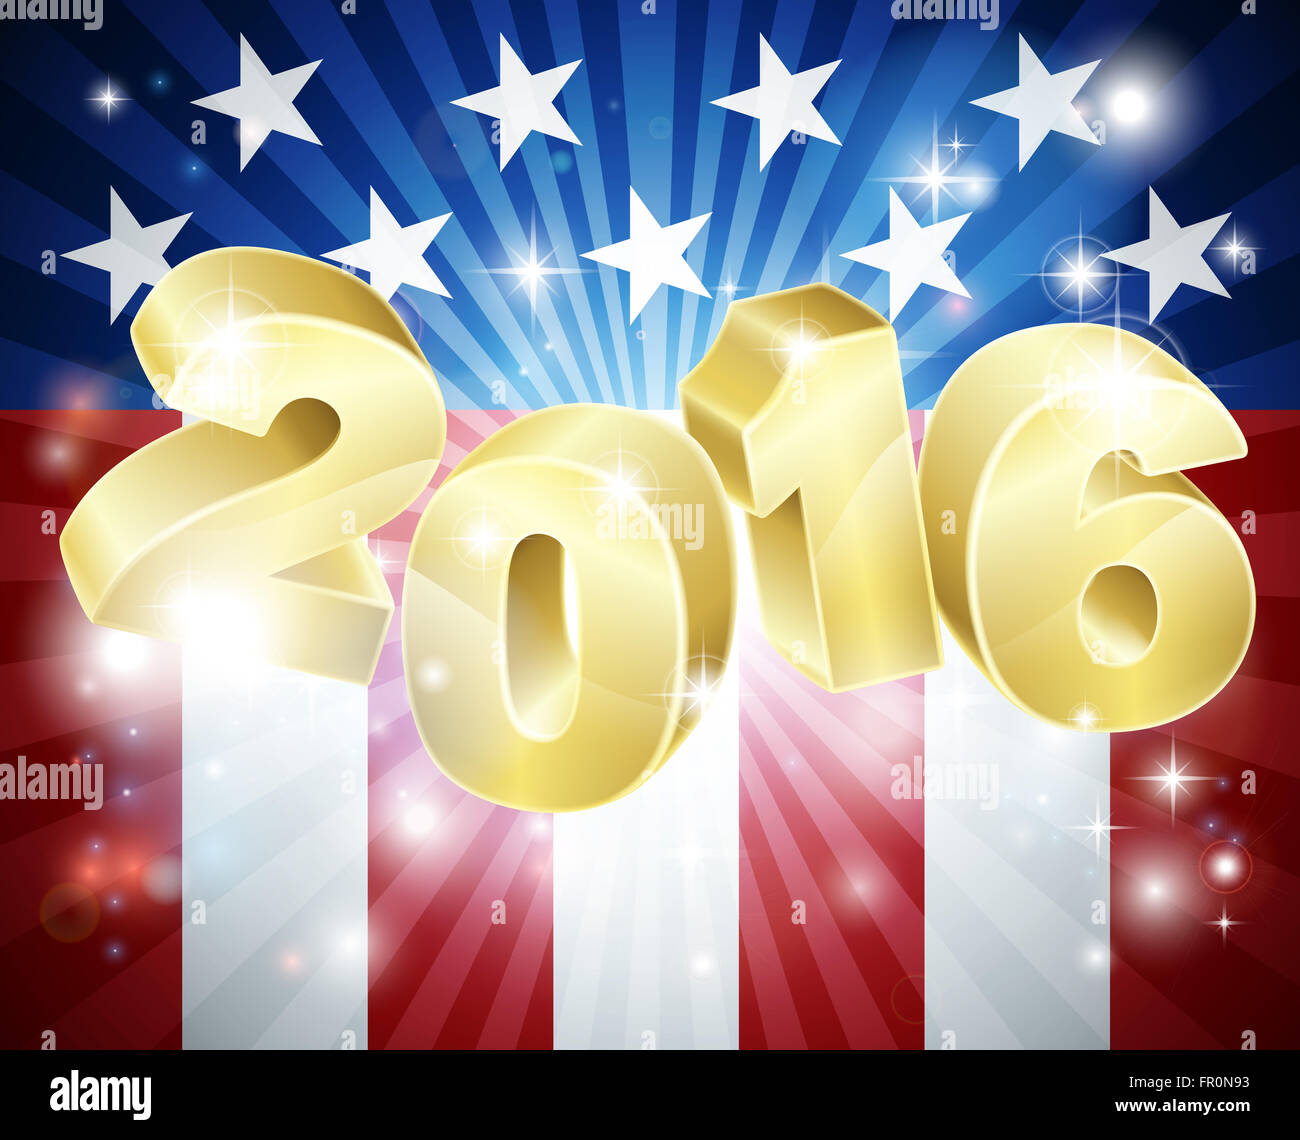 Élection 2016 drapeau américain Concept avec le dessin du drapeau à l'arrière-plan et 2016 année nombre en 3D Banque D'Images